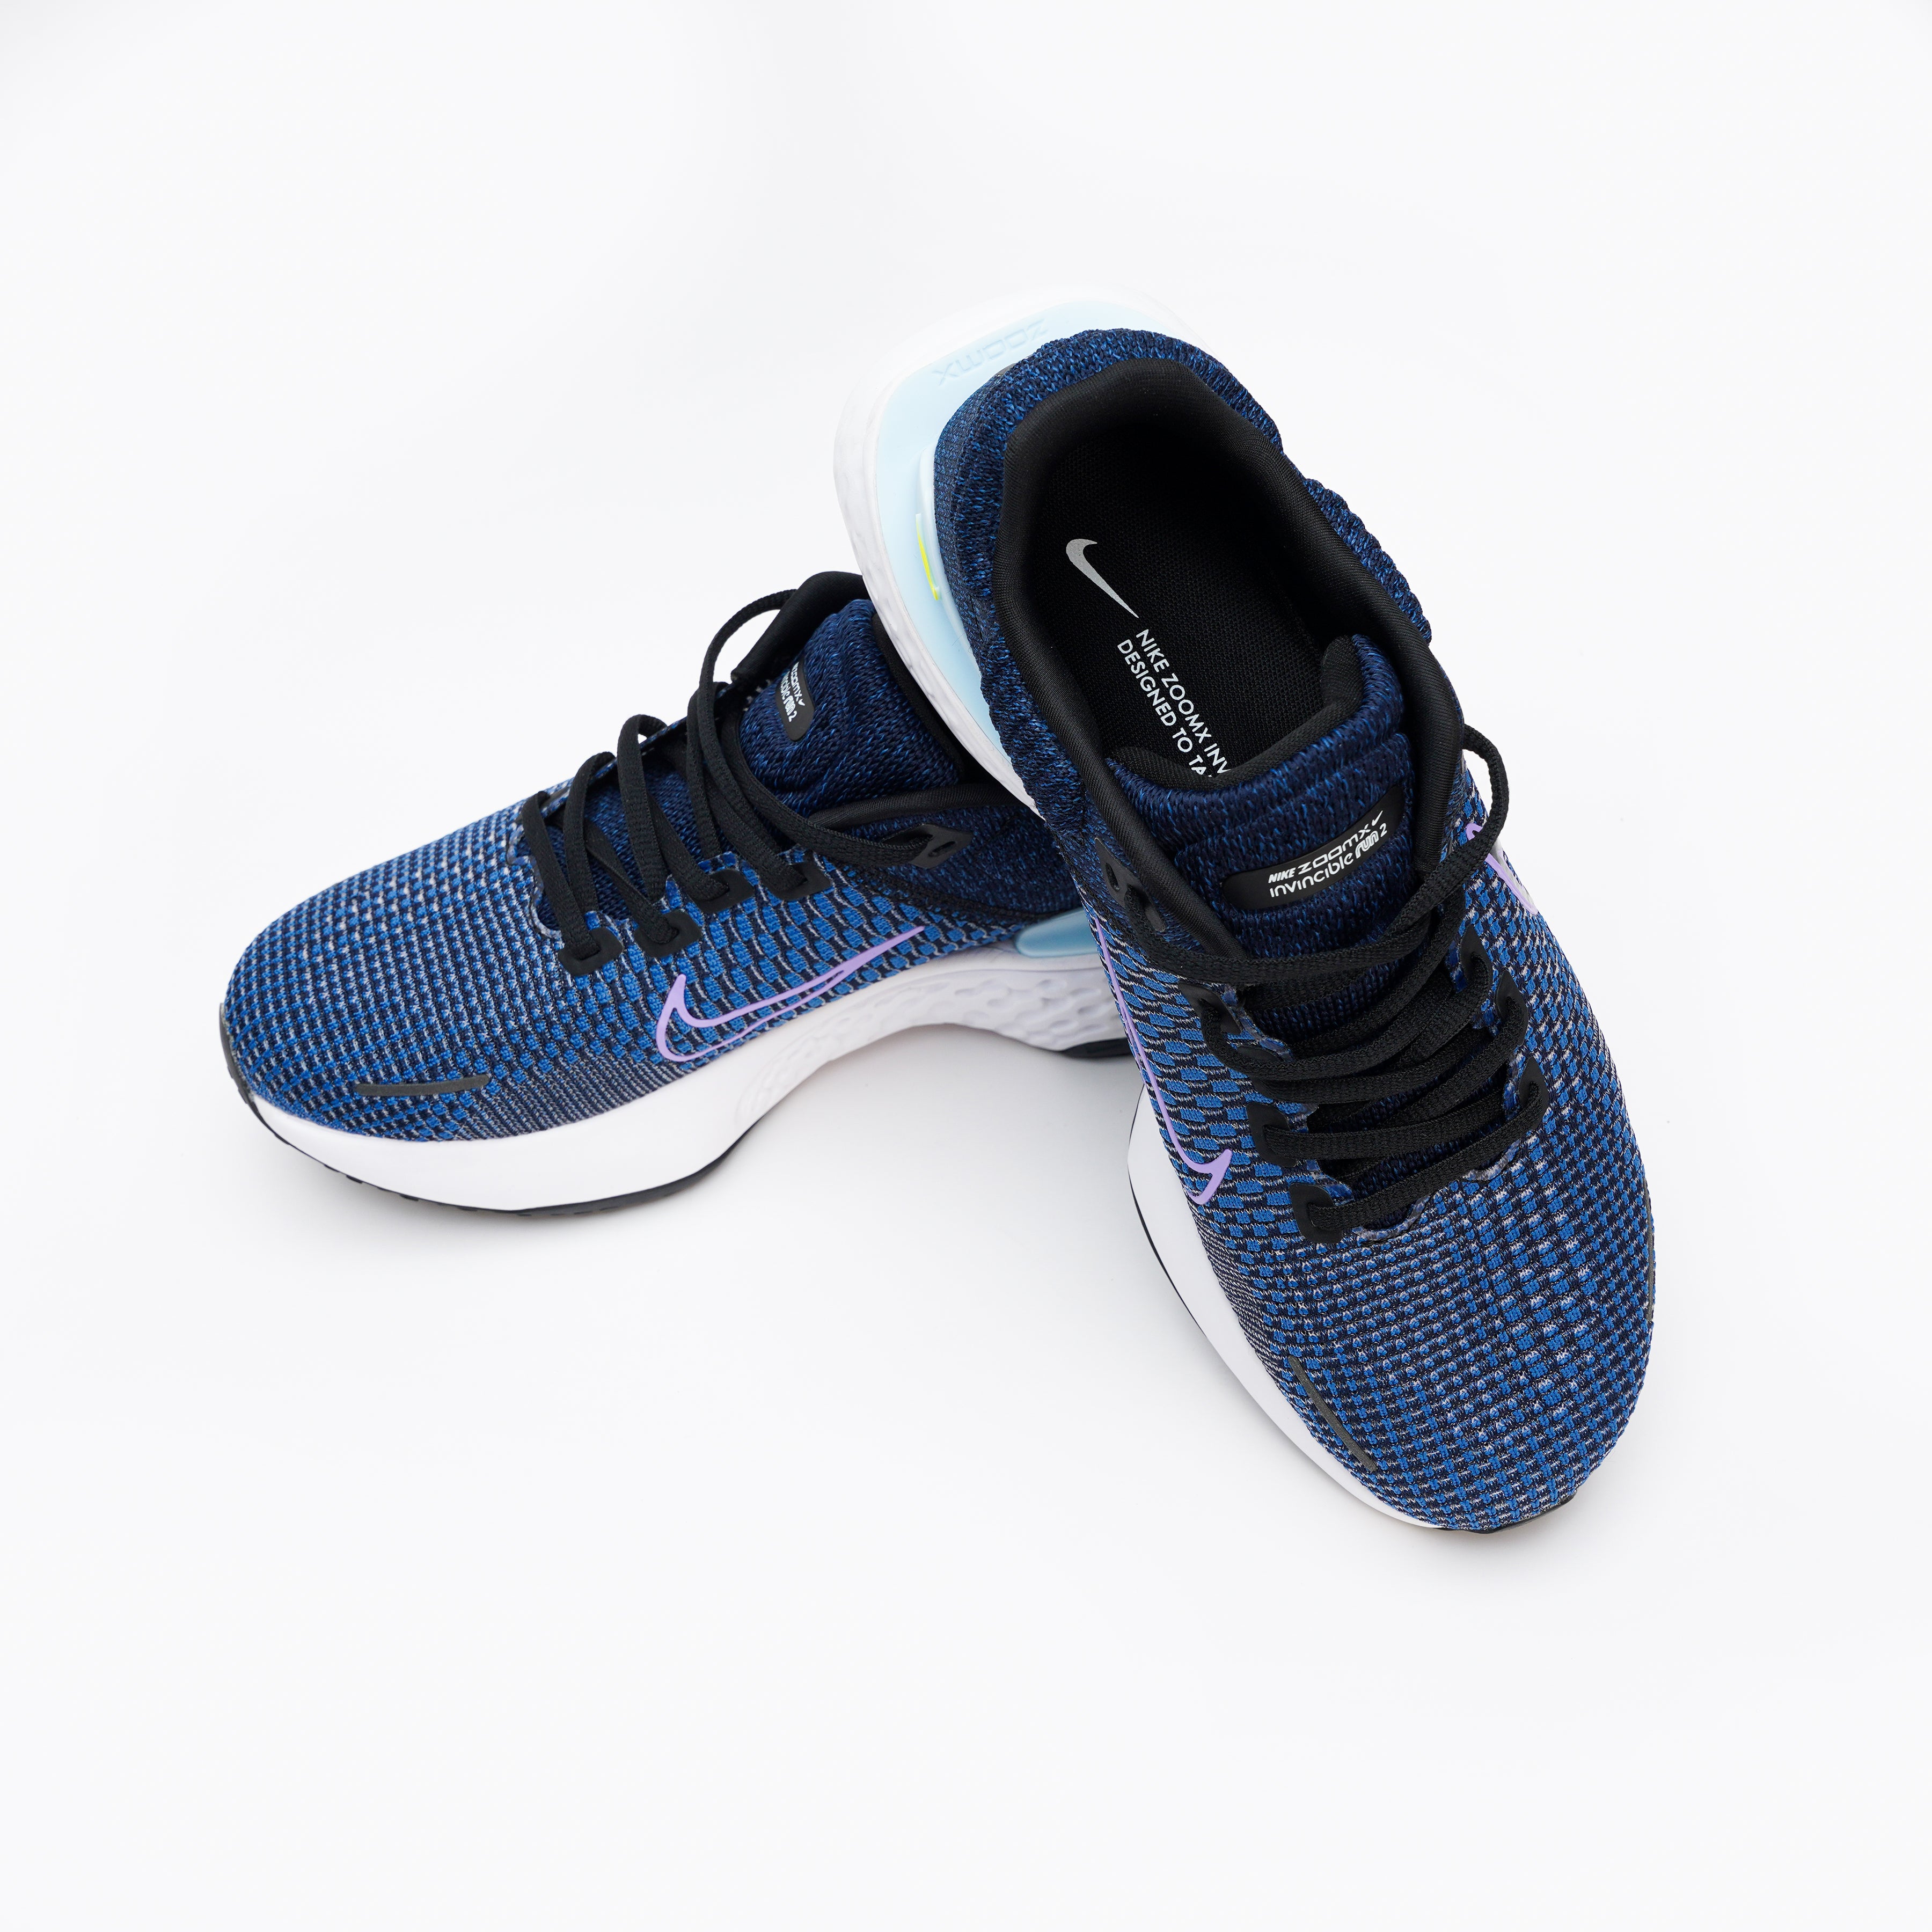 25056-Blue stylish Design heavy sole All Seasons sneaker for men